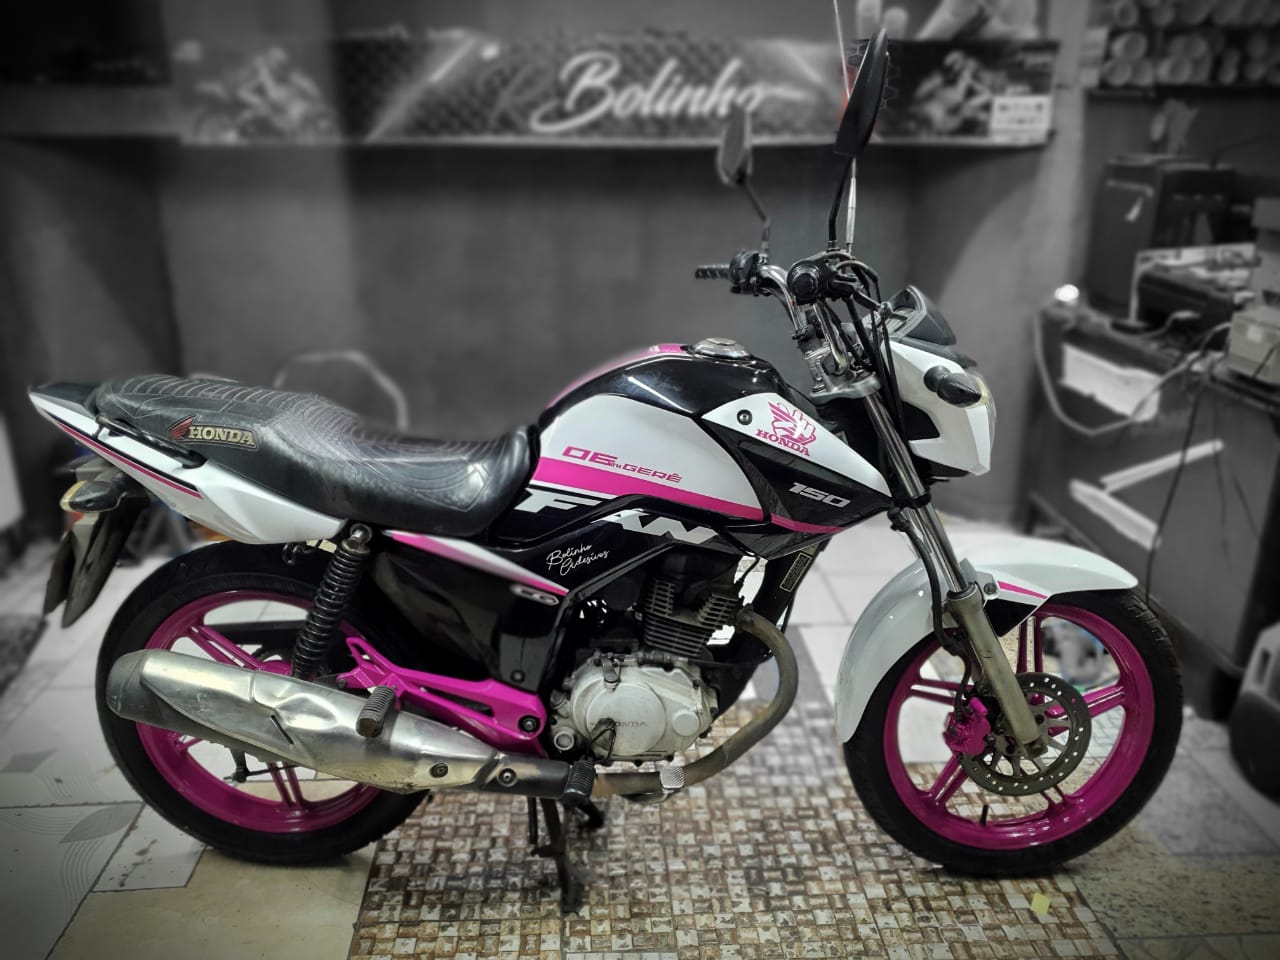 Bolinho Adesivos on X: Fan 160. Adesivos modelo original no rosa  fluorescentes. Vem que a próxima é a sua. #BOLINHOADESIVOS Chama no chat   / X